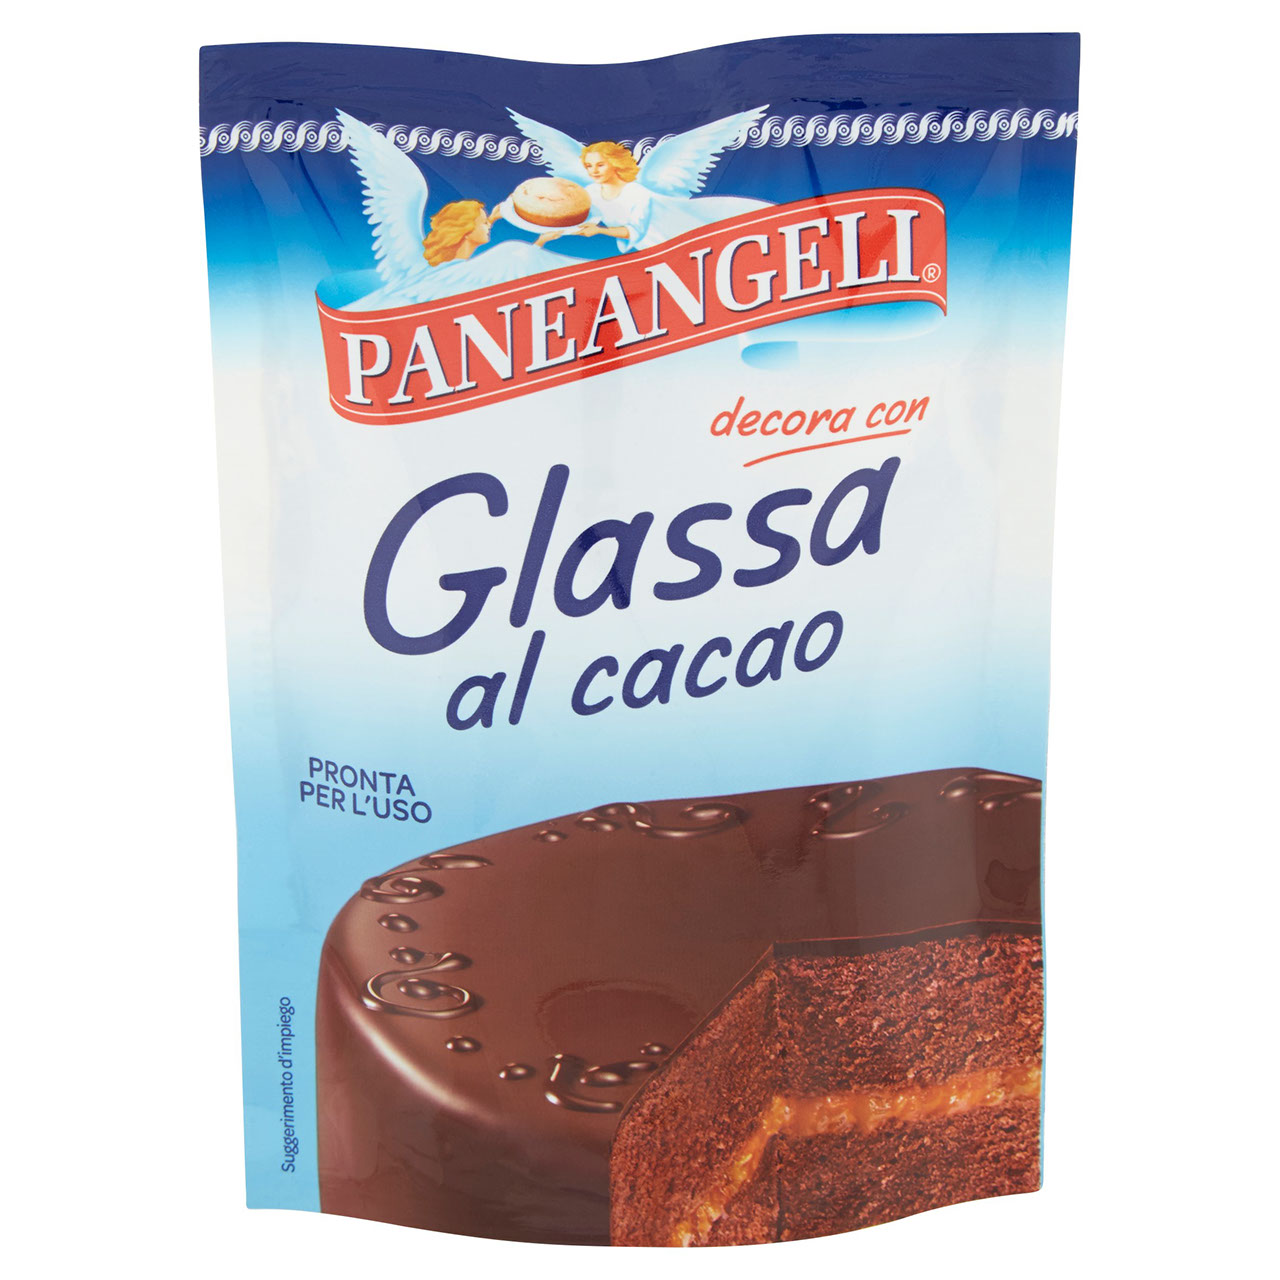 Paneangeli Glassa al Cioccolato in vendita online